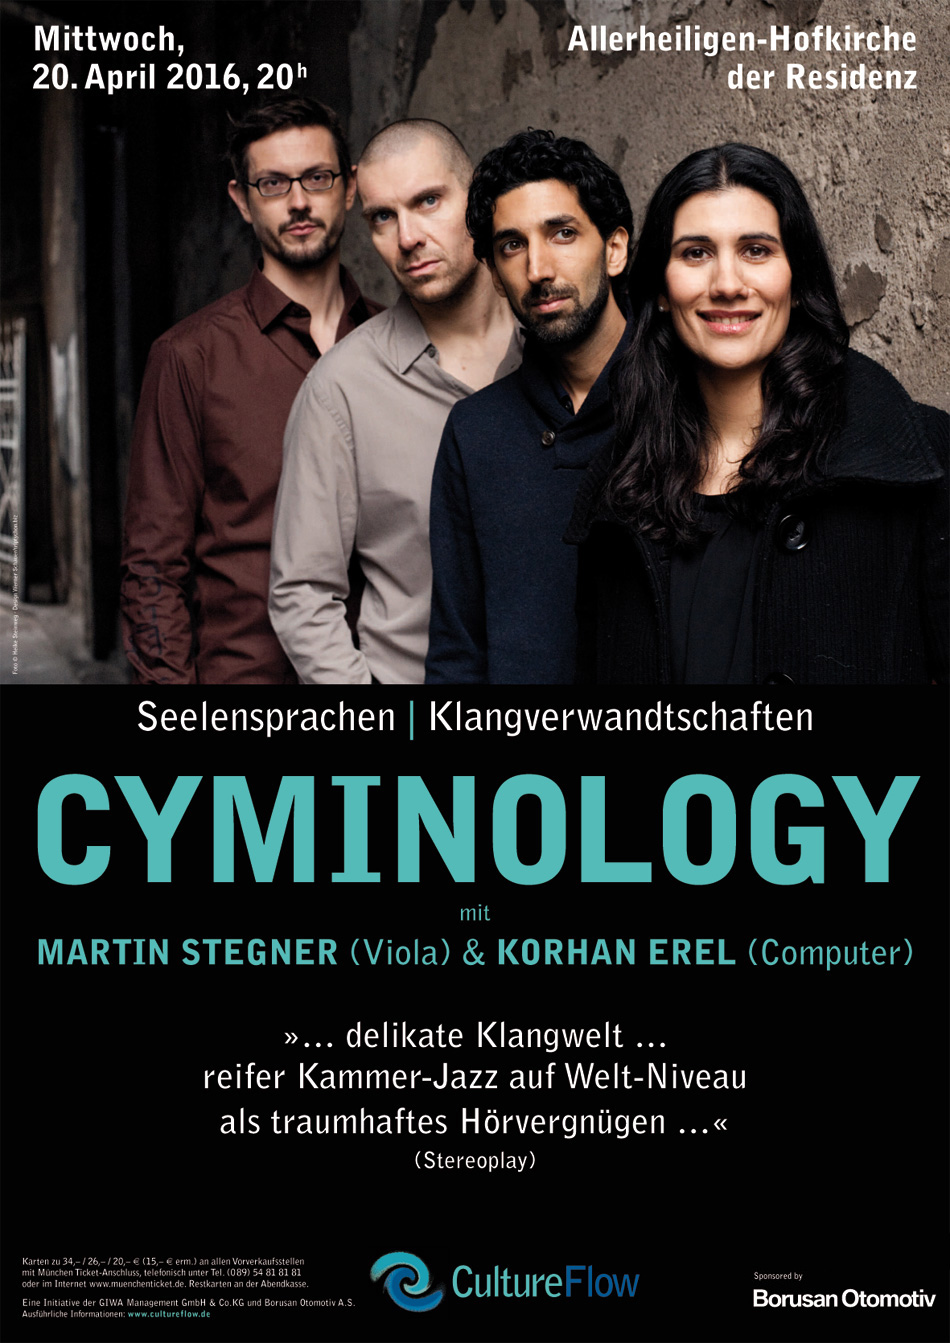 Cyminology